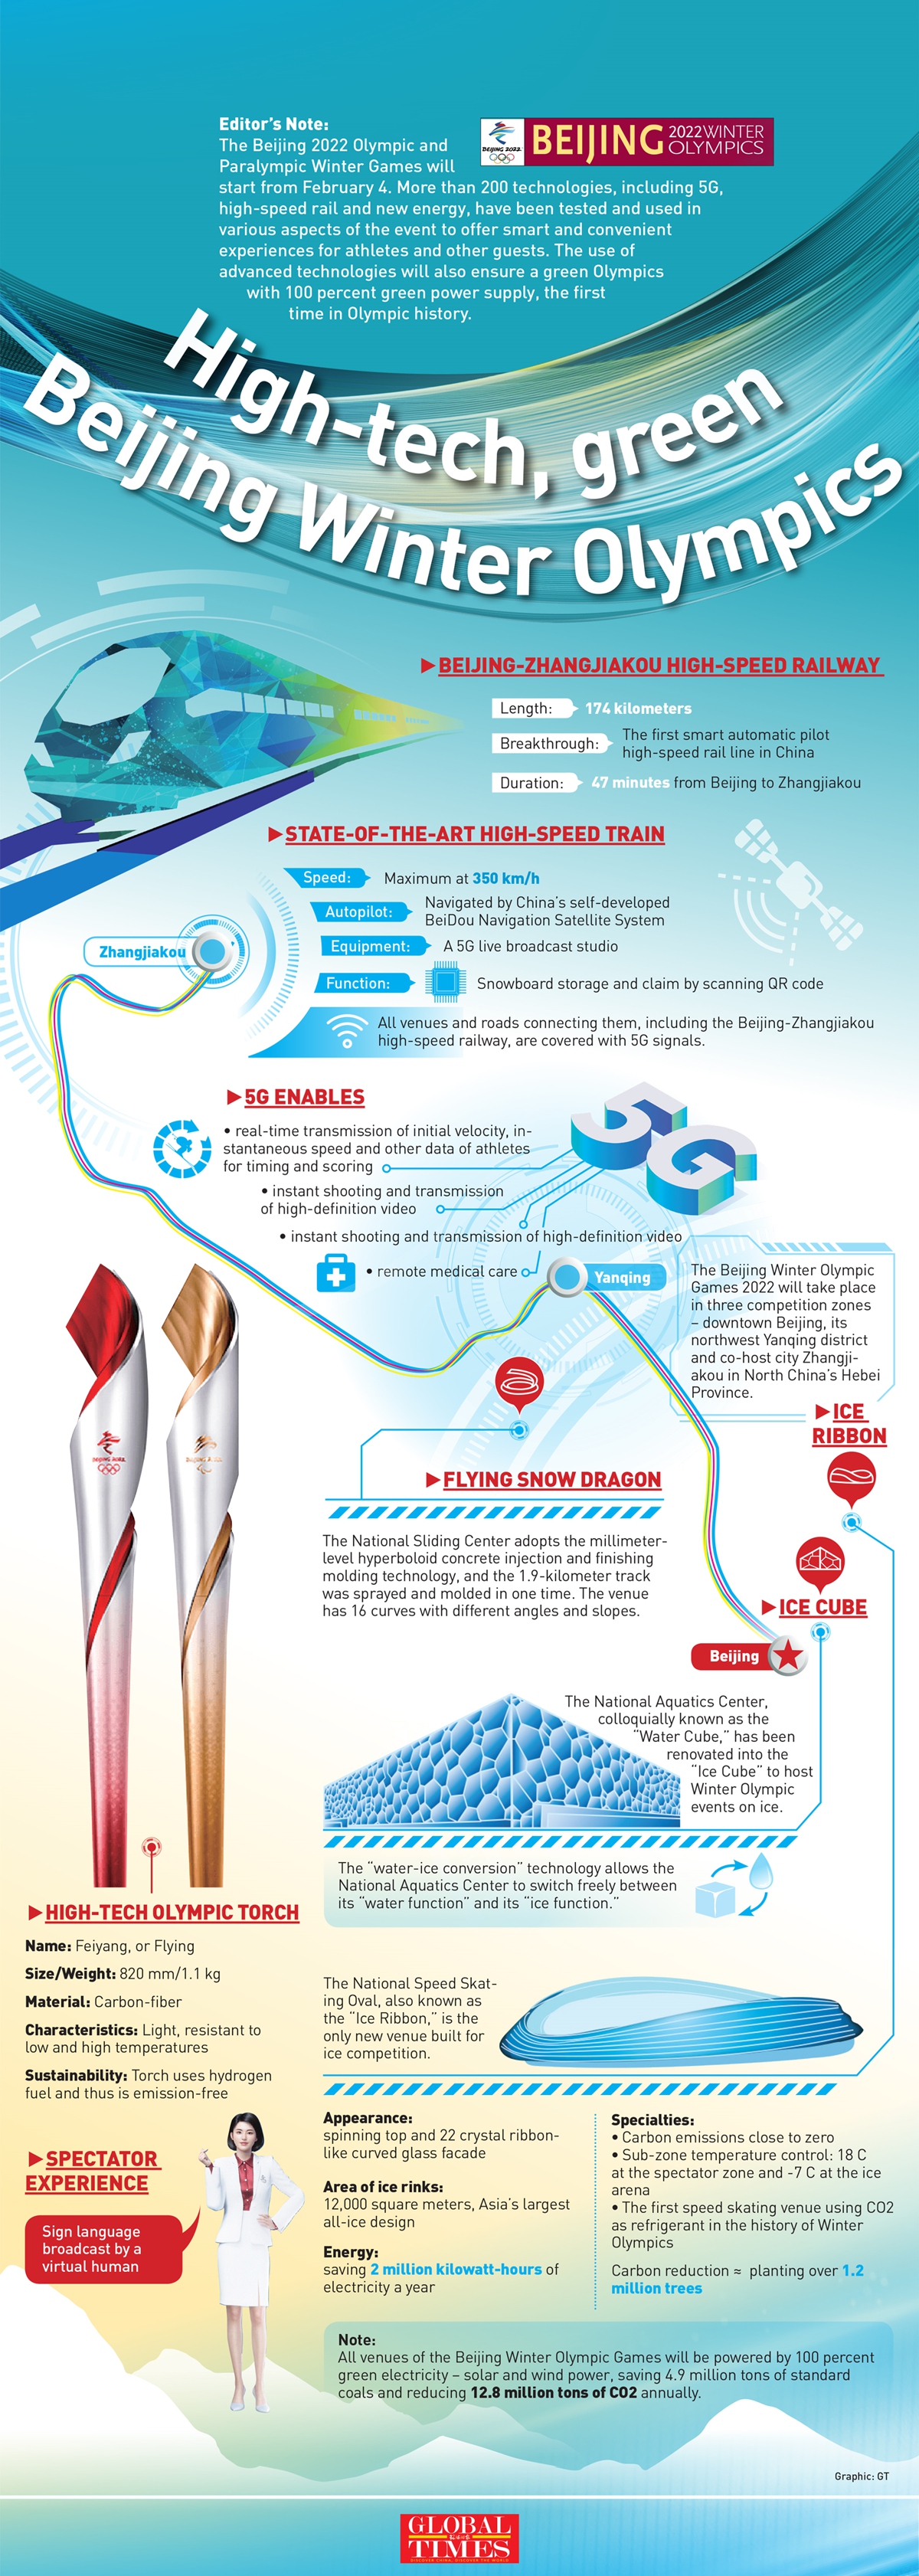 High-tech, green Beijing Winter Olympics Infographic: GT